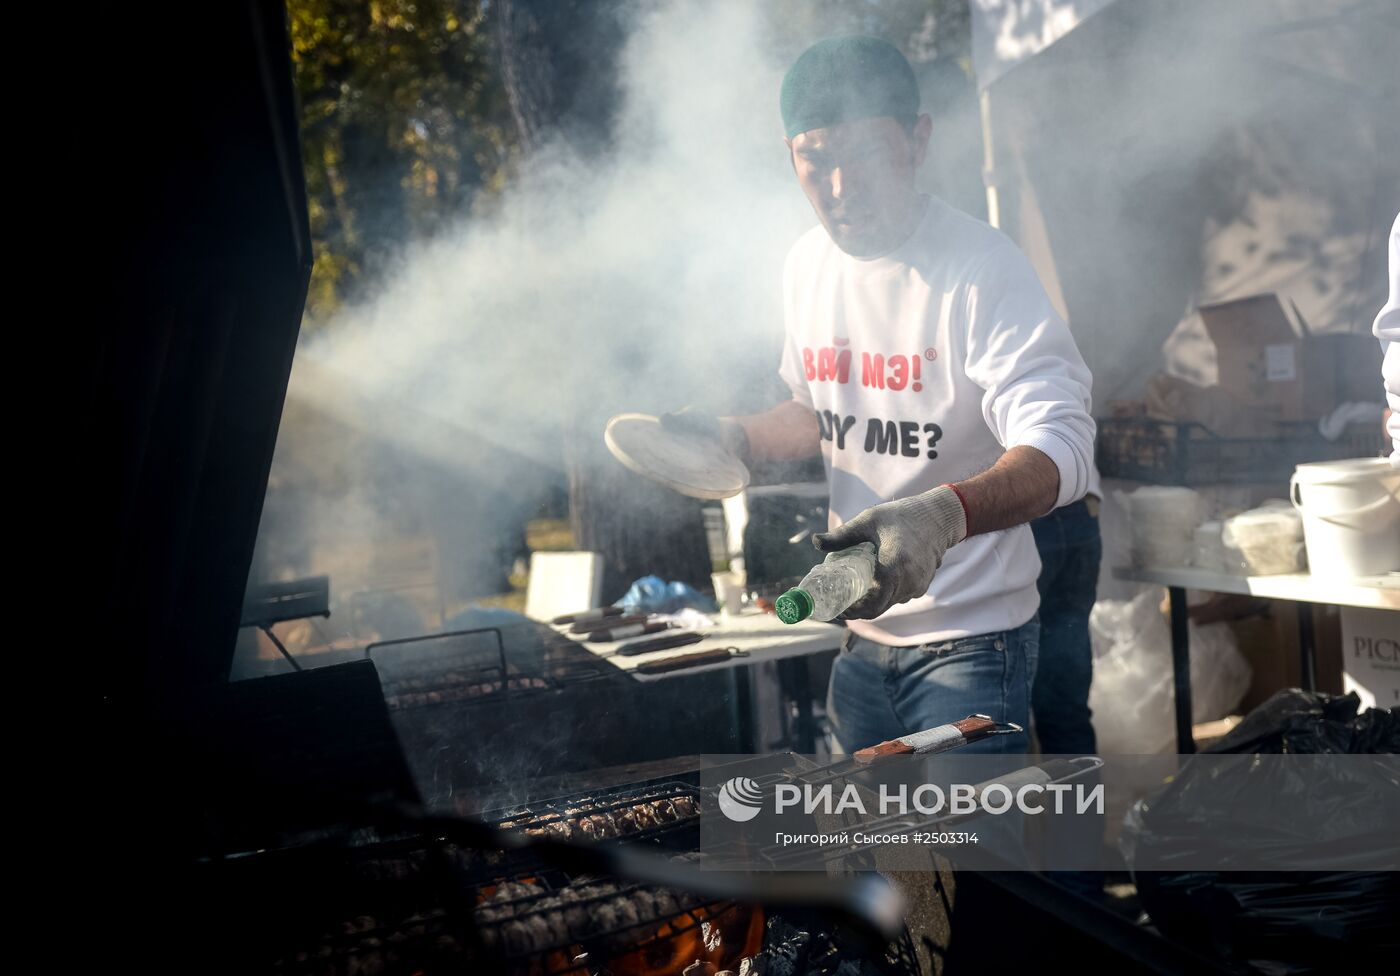 Грузинский праздник "Тбилисоба" в Москве